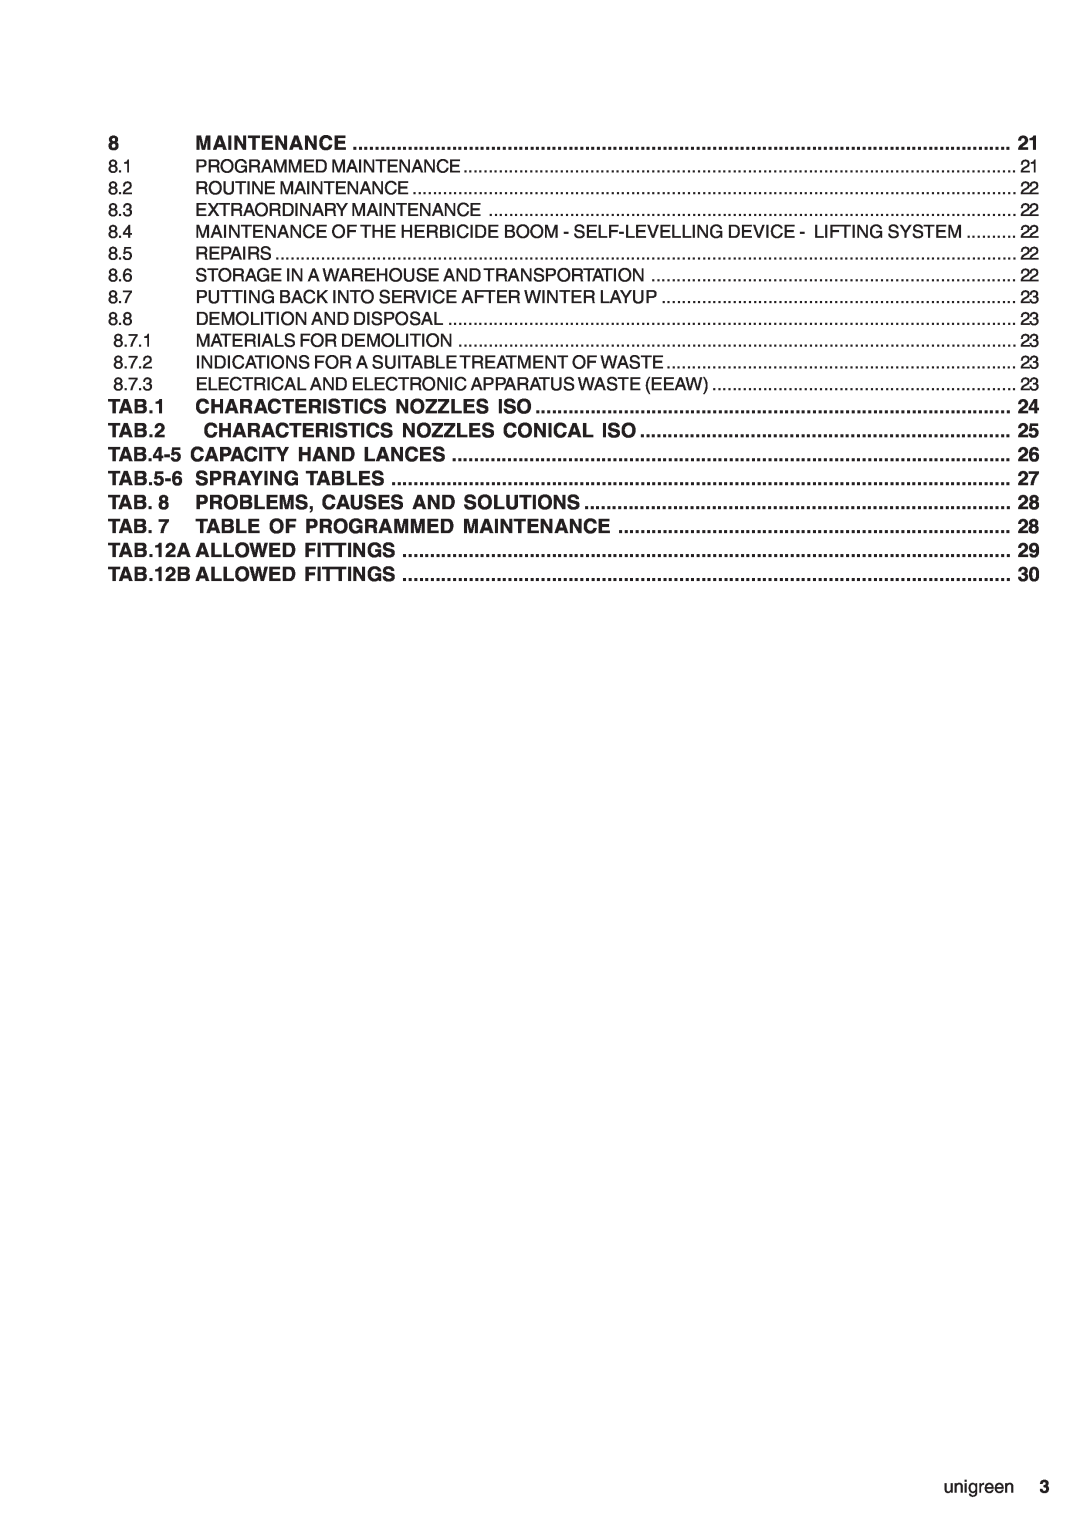 Unigreen CAMPO 11 - 16 - 22 - 32, DSP 11 - 16 - 22 - 32 manual 8.7.1 